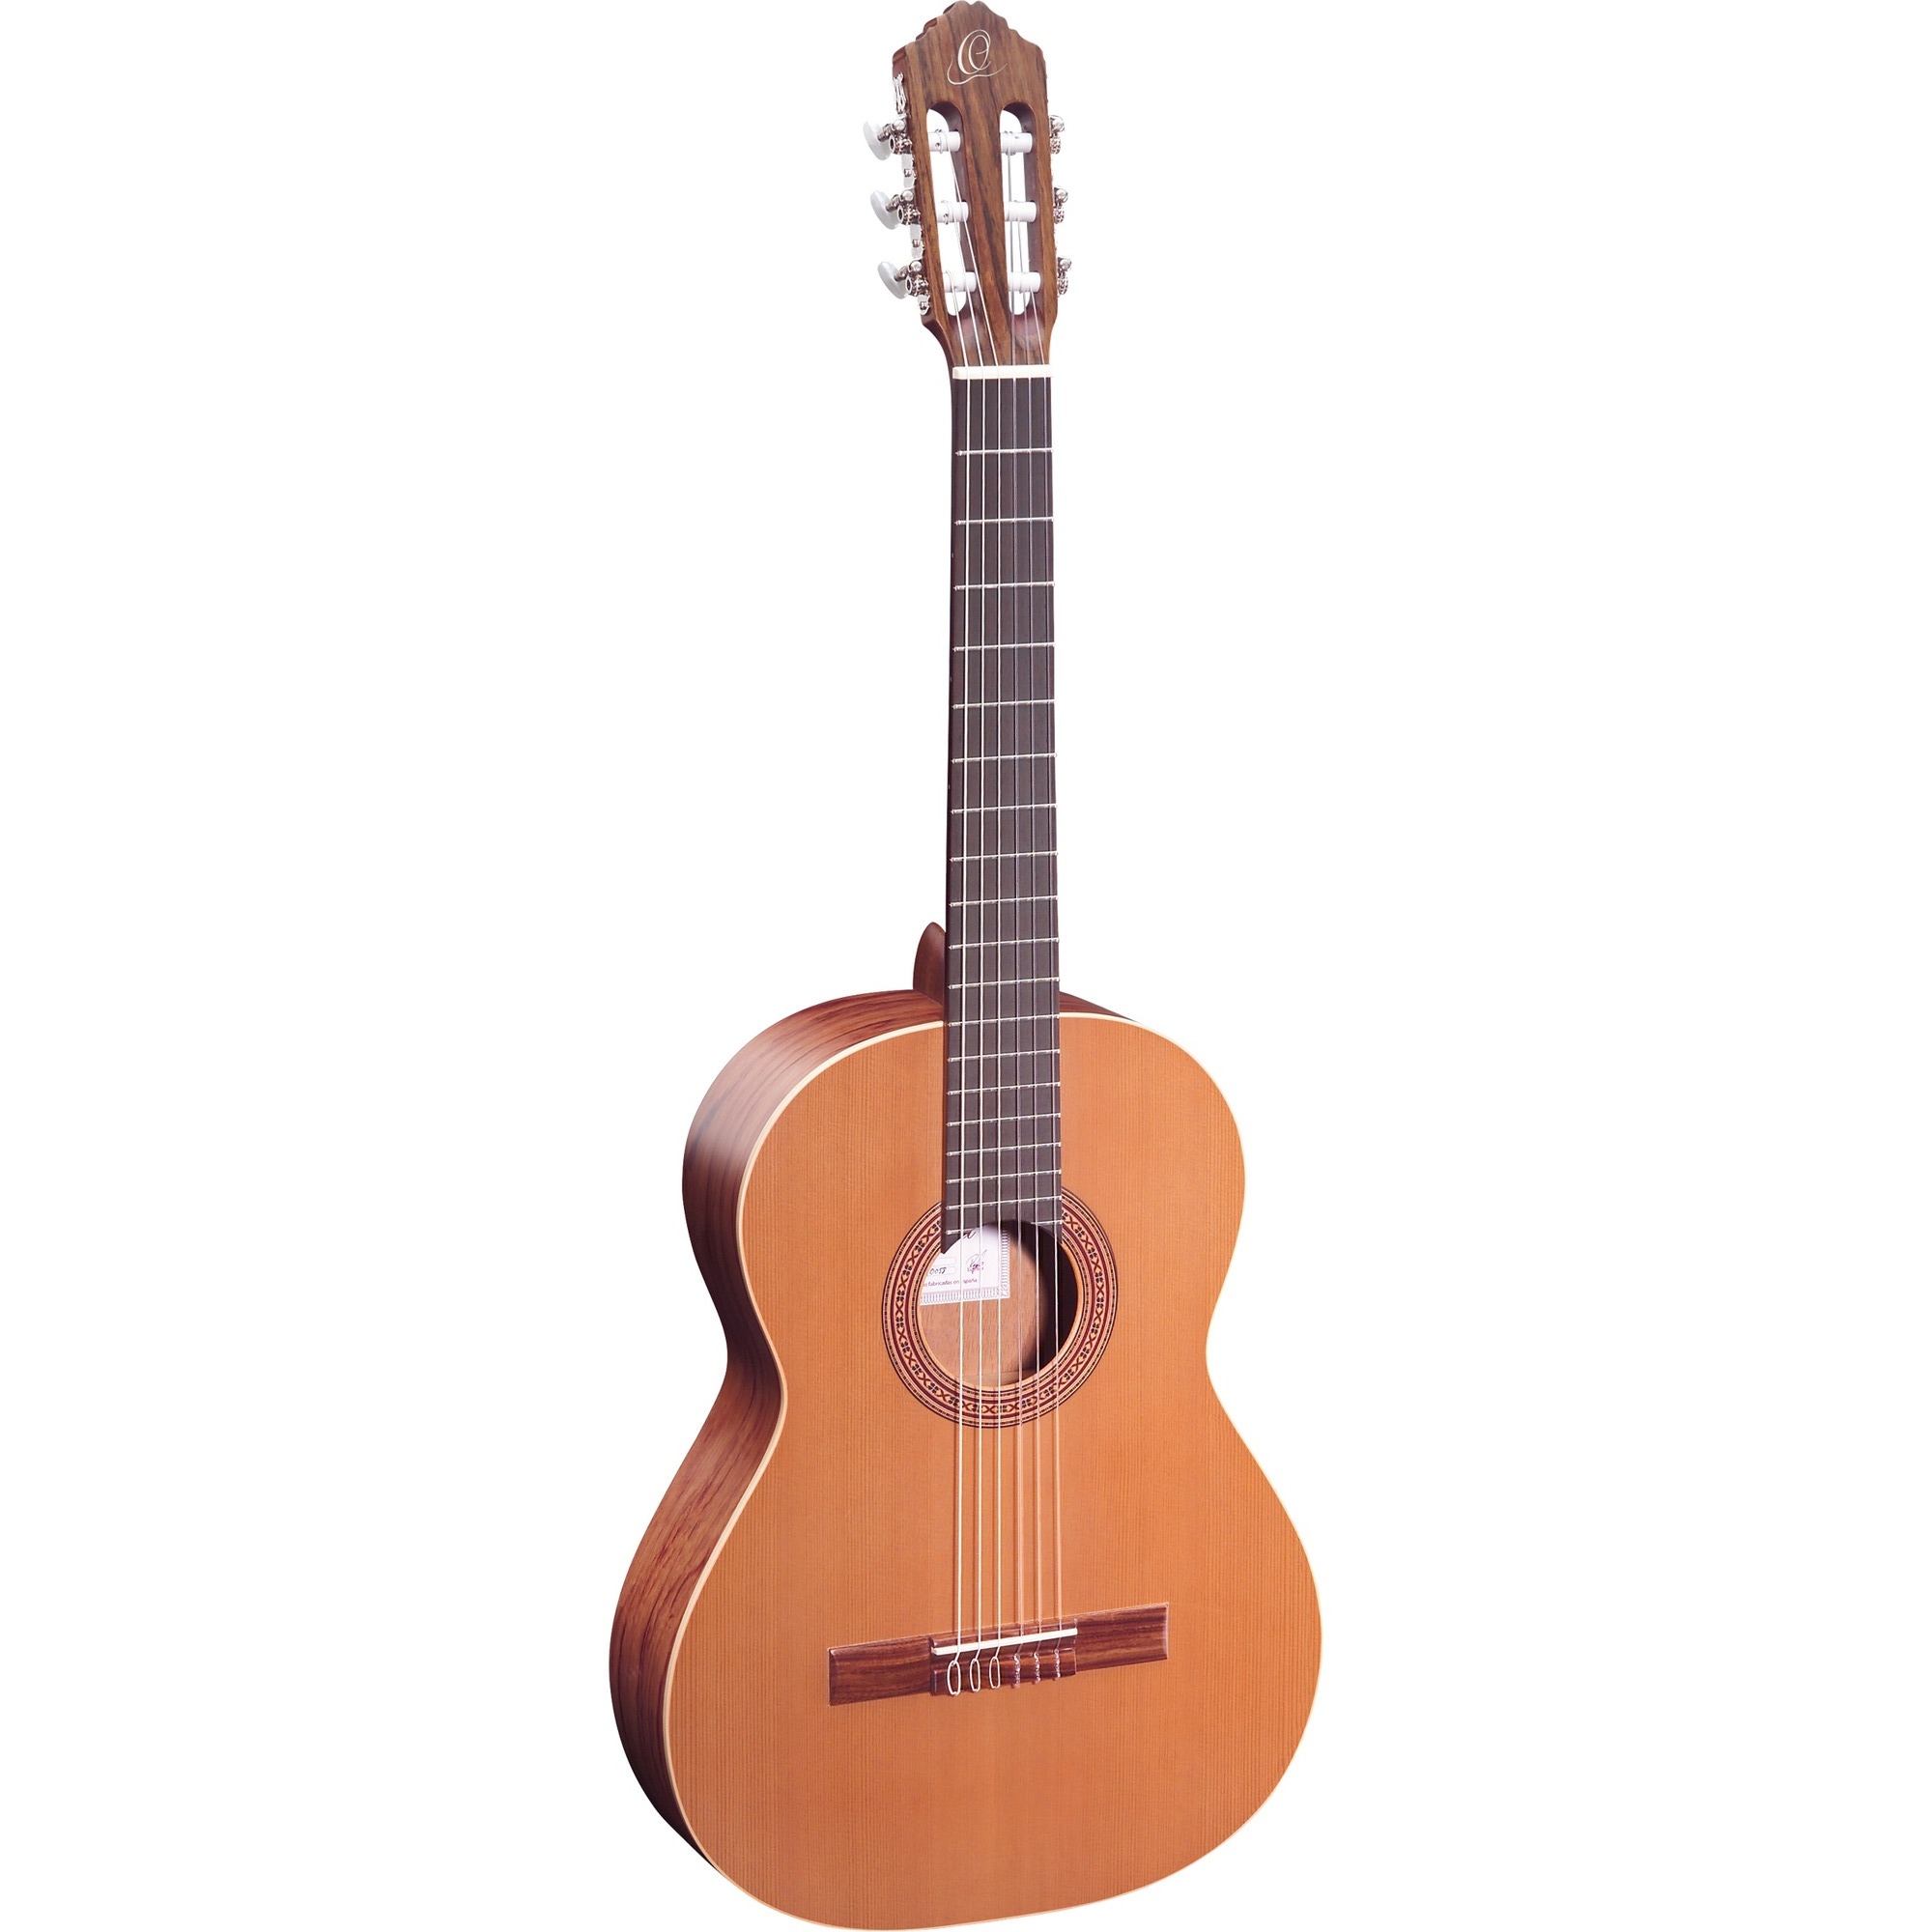 Классические гитары Ortega R180 Traditional Series (чехол в комплекте) классические гитары ortega rst5 3 4 student series 3 4